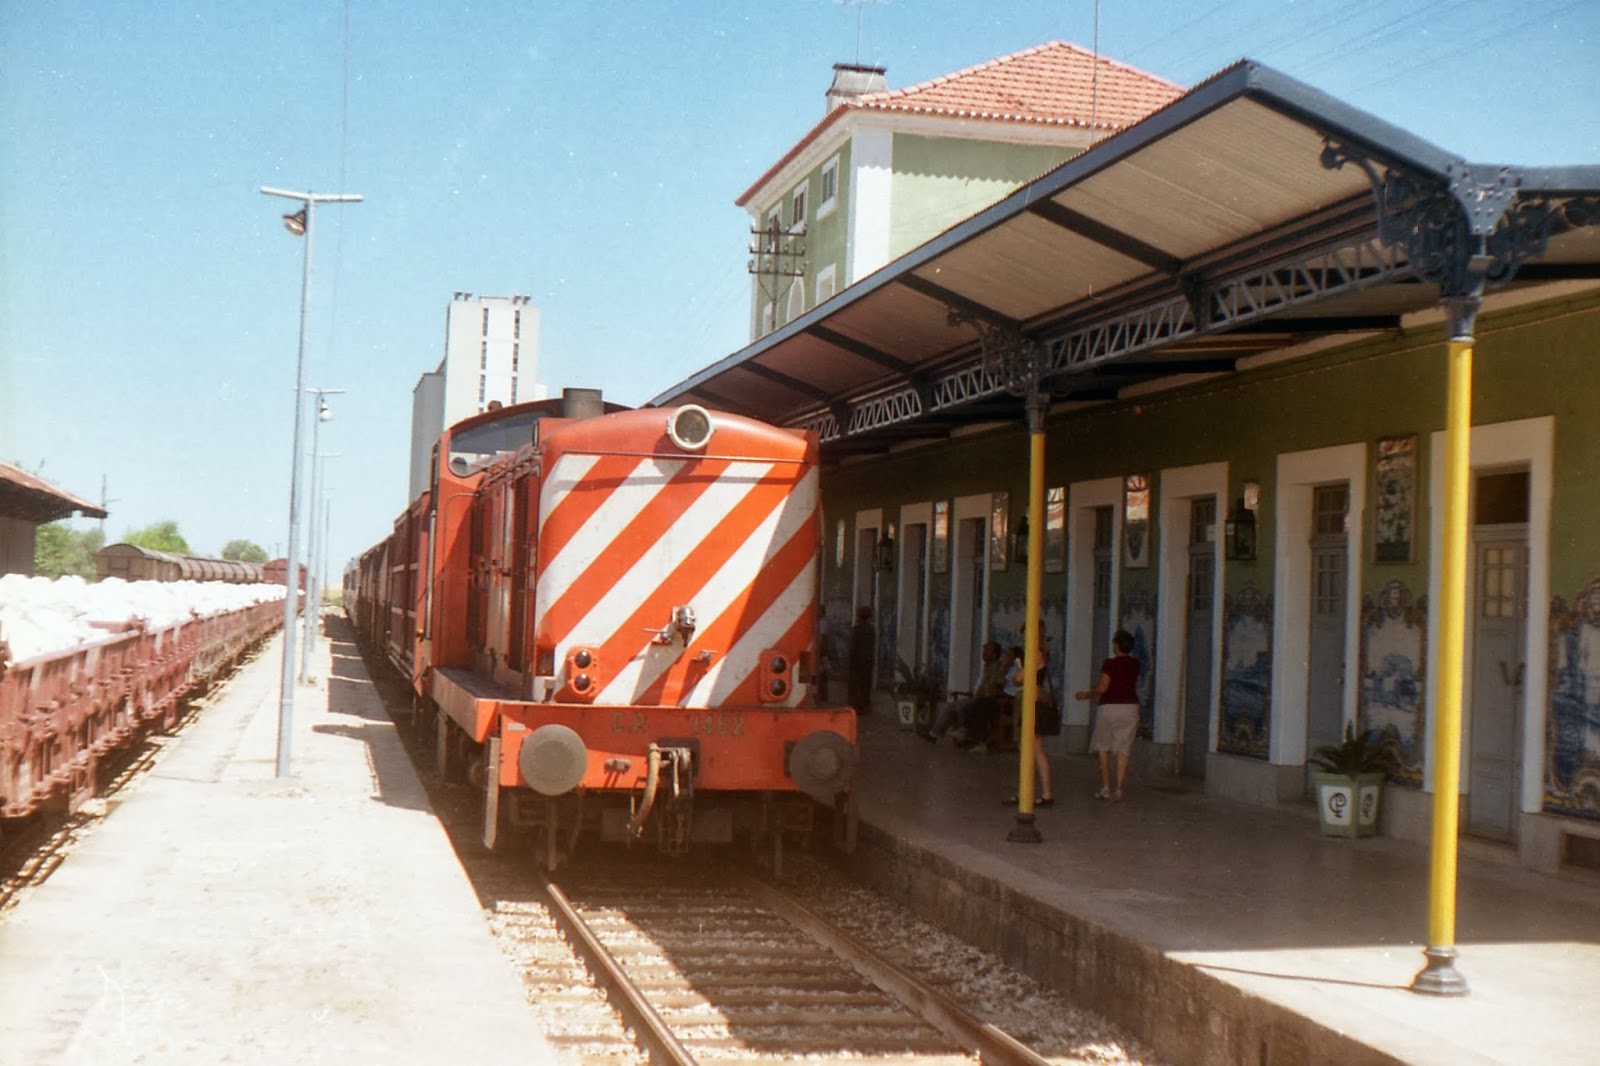  tren en Badajoz , procedente de la estacion portuguesa de Elvas. fondo J.J. Olaizola